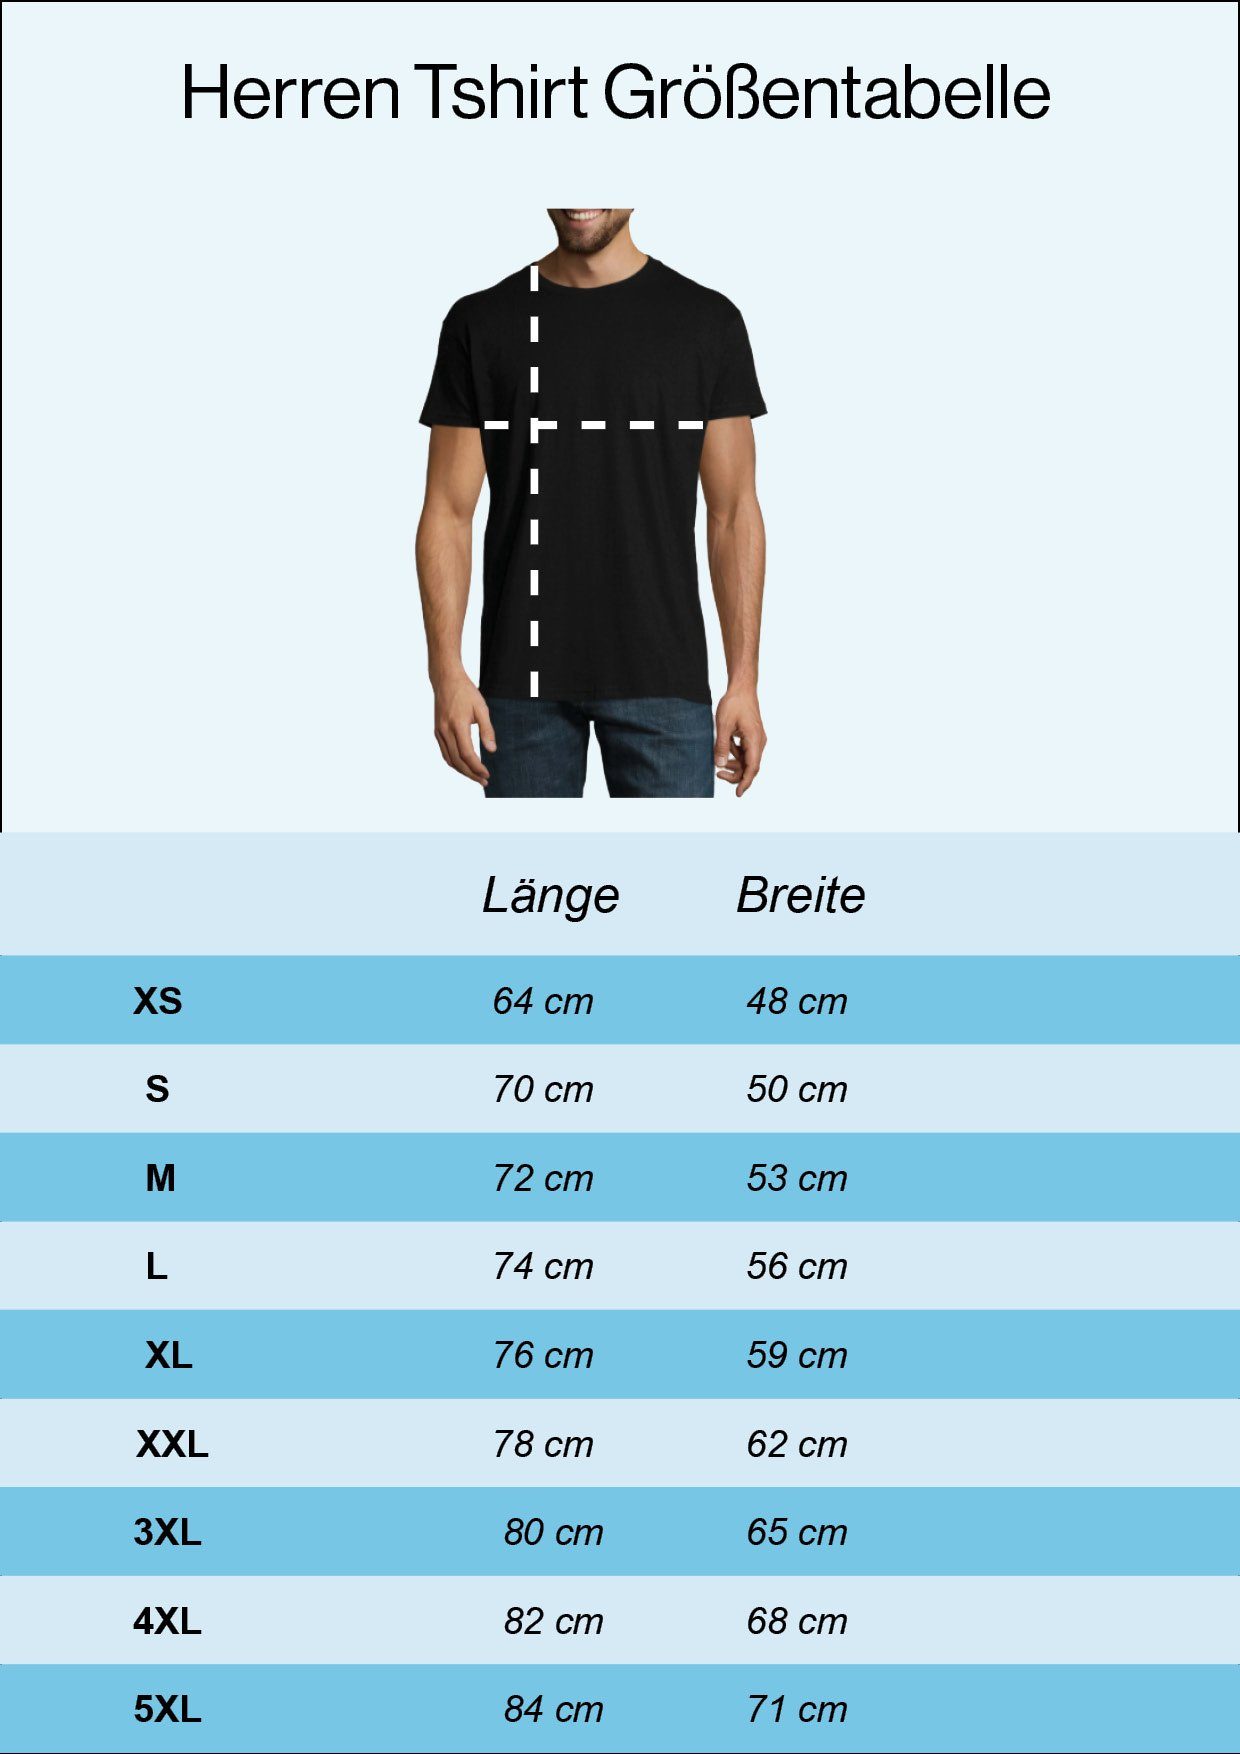 Youth Shirt T-Shirt Designz heute Produktiver mehr Atme, Weiß nicht wird mit Ich Herren lustigem es Frontprint